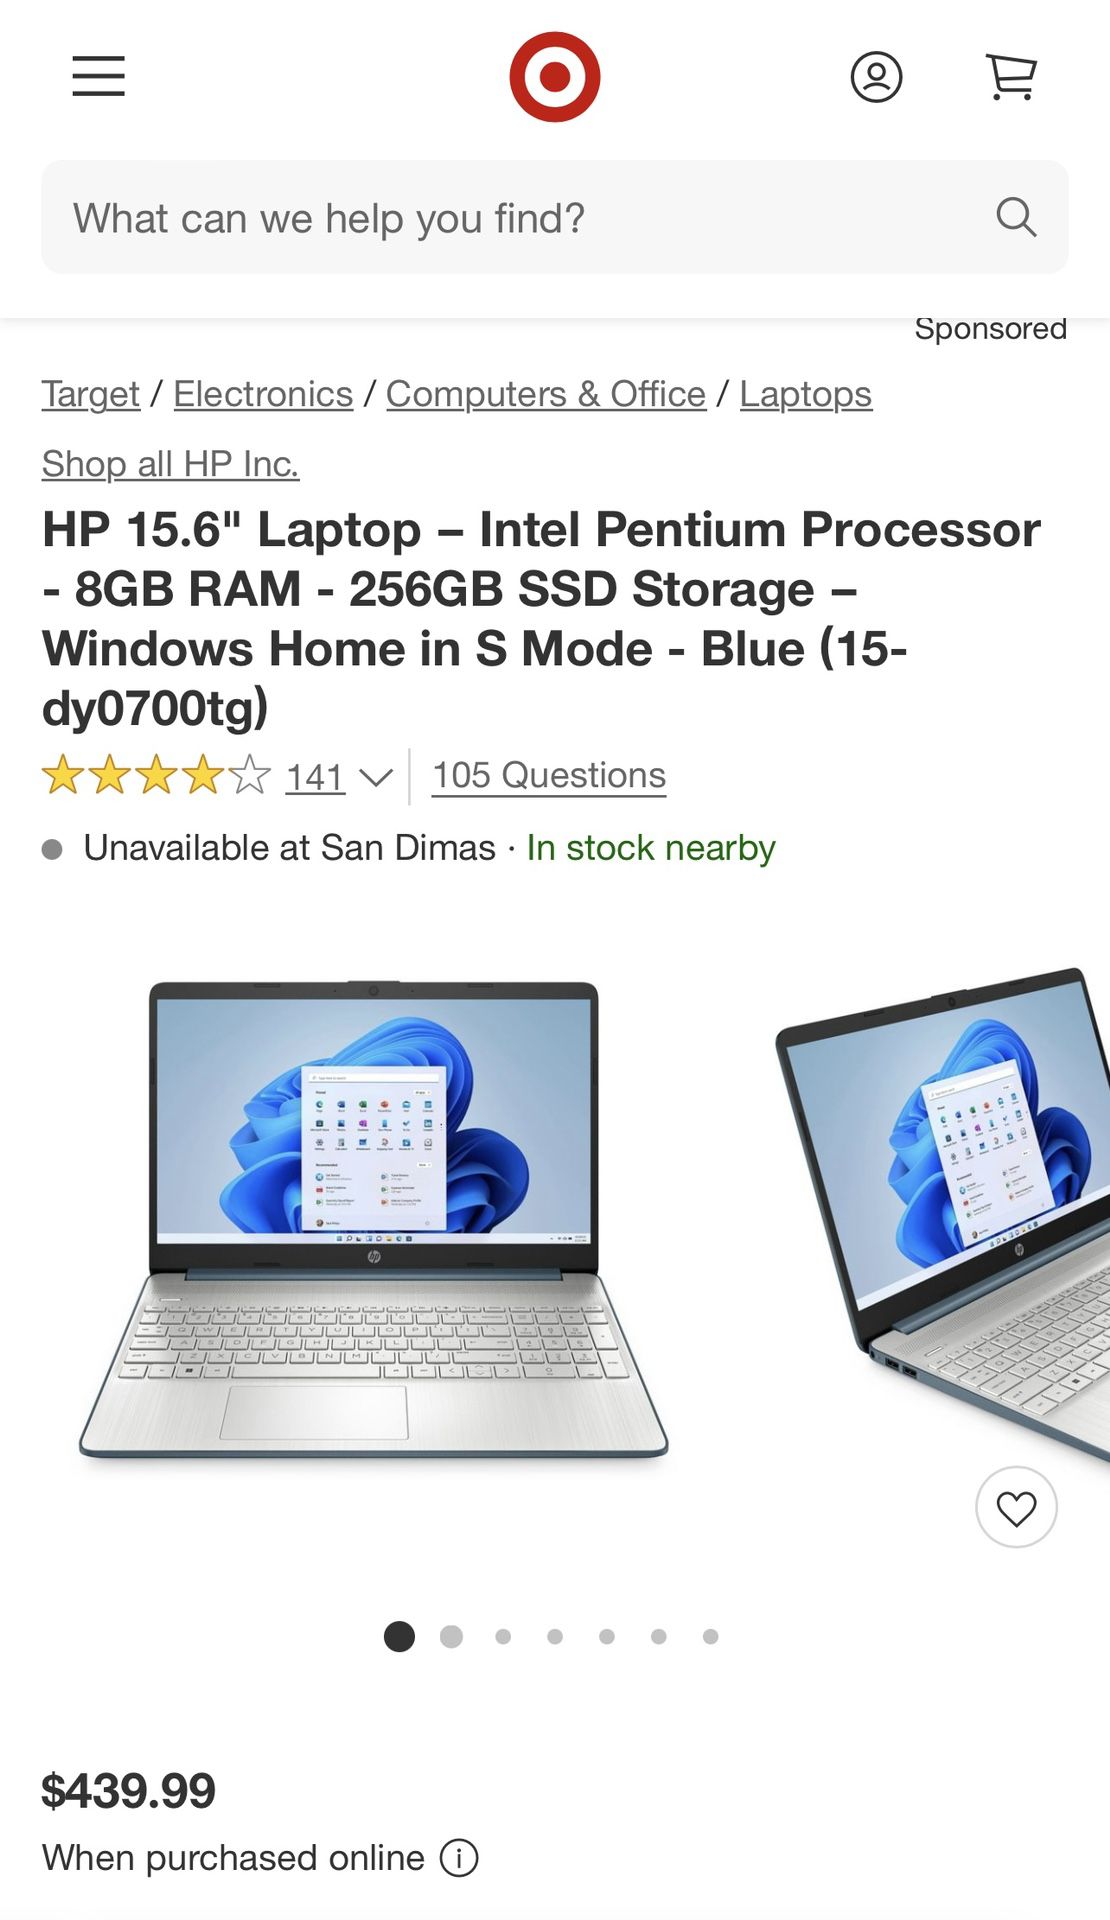 HP 15.6" Laptop Certified Refurbished